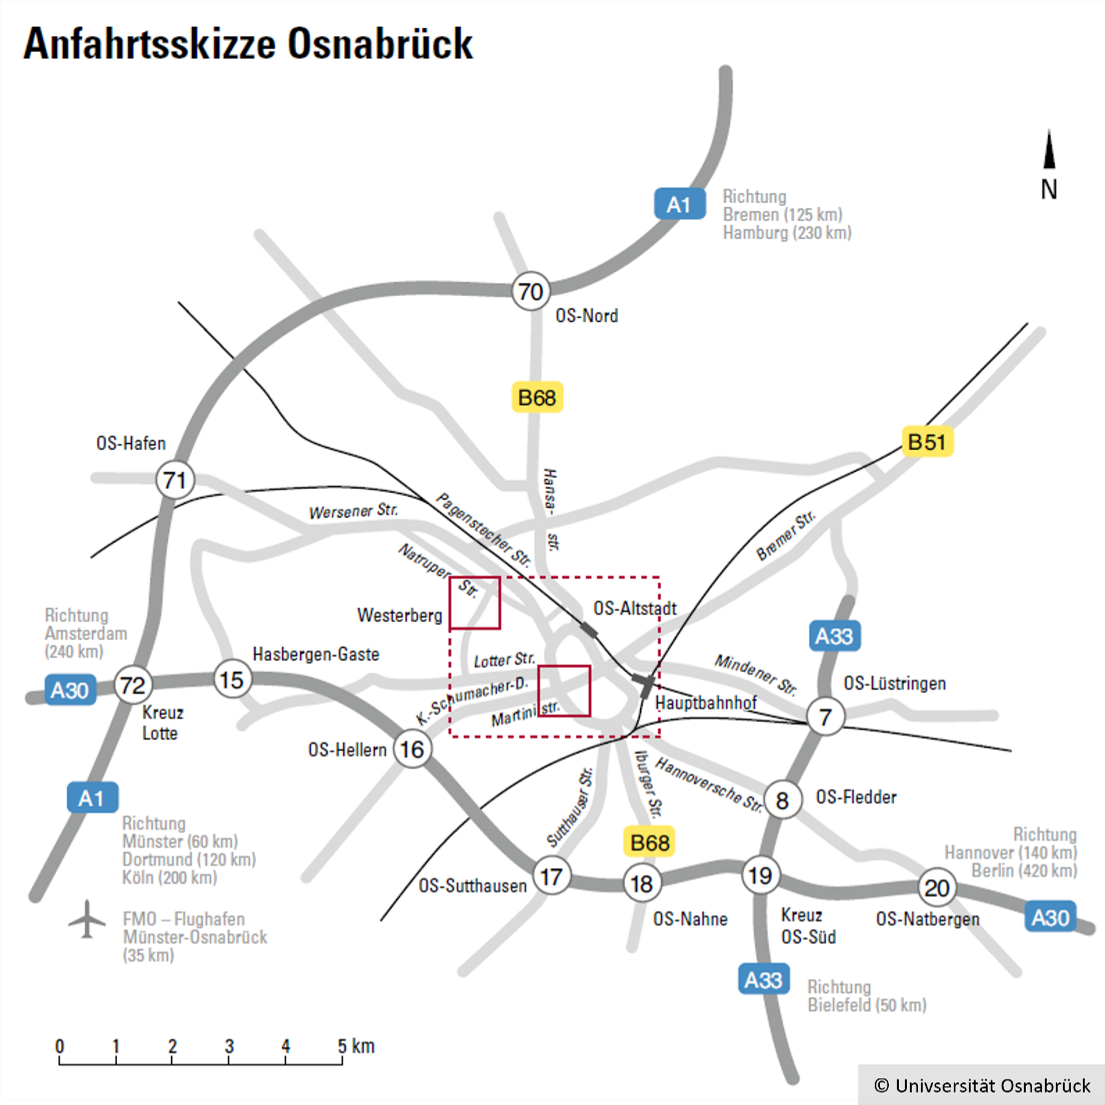 Anfahrtsskizze Osnabrück, © Universität Osnabrück